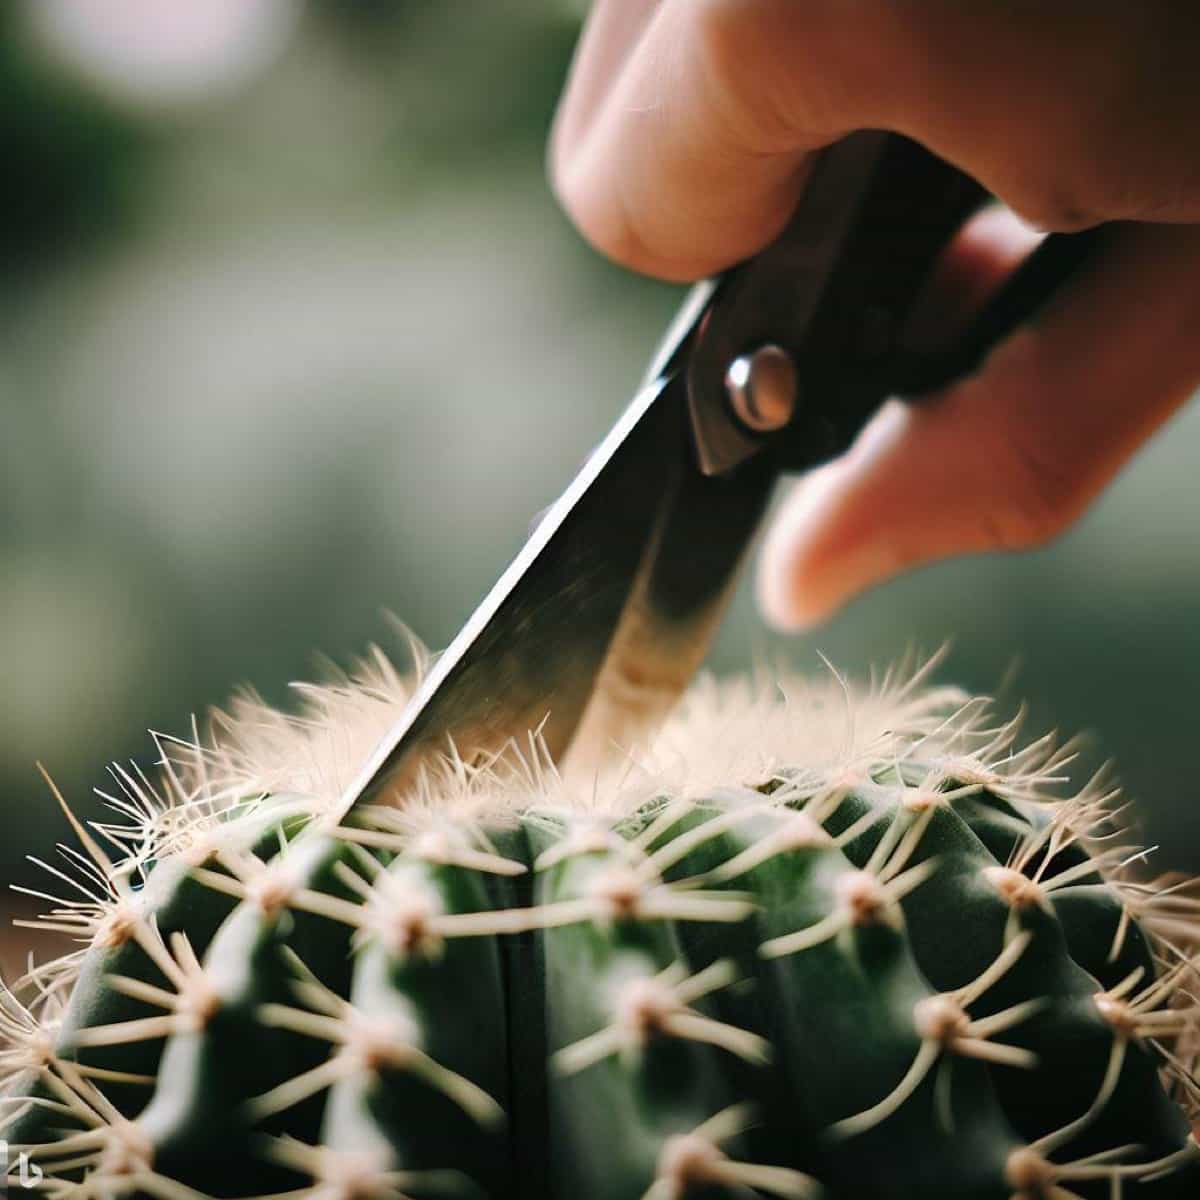 Trimming a Cactus